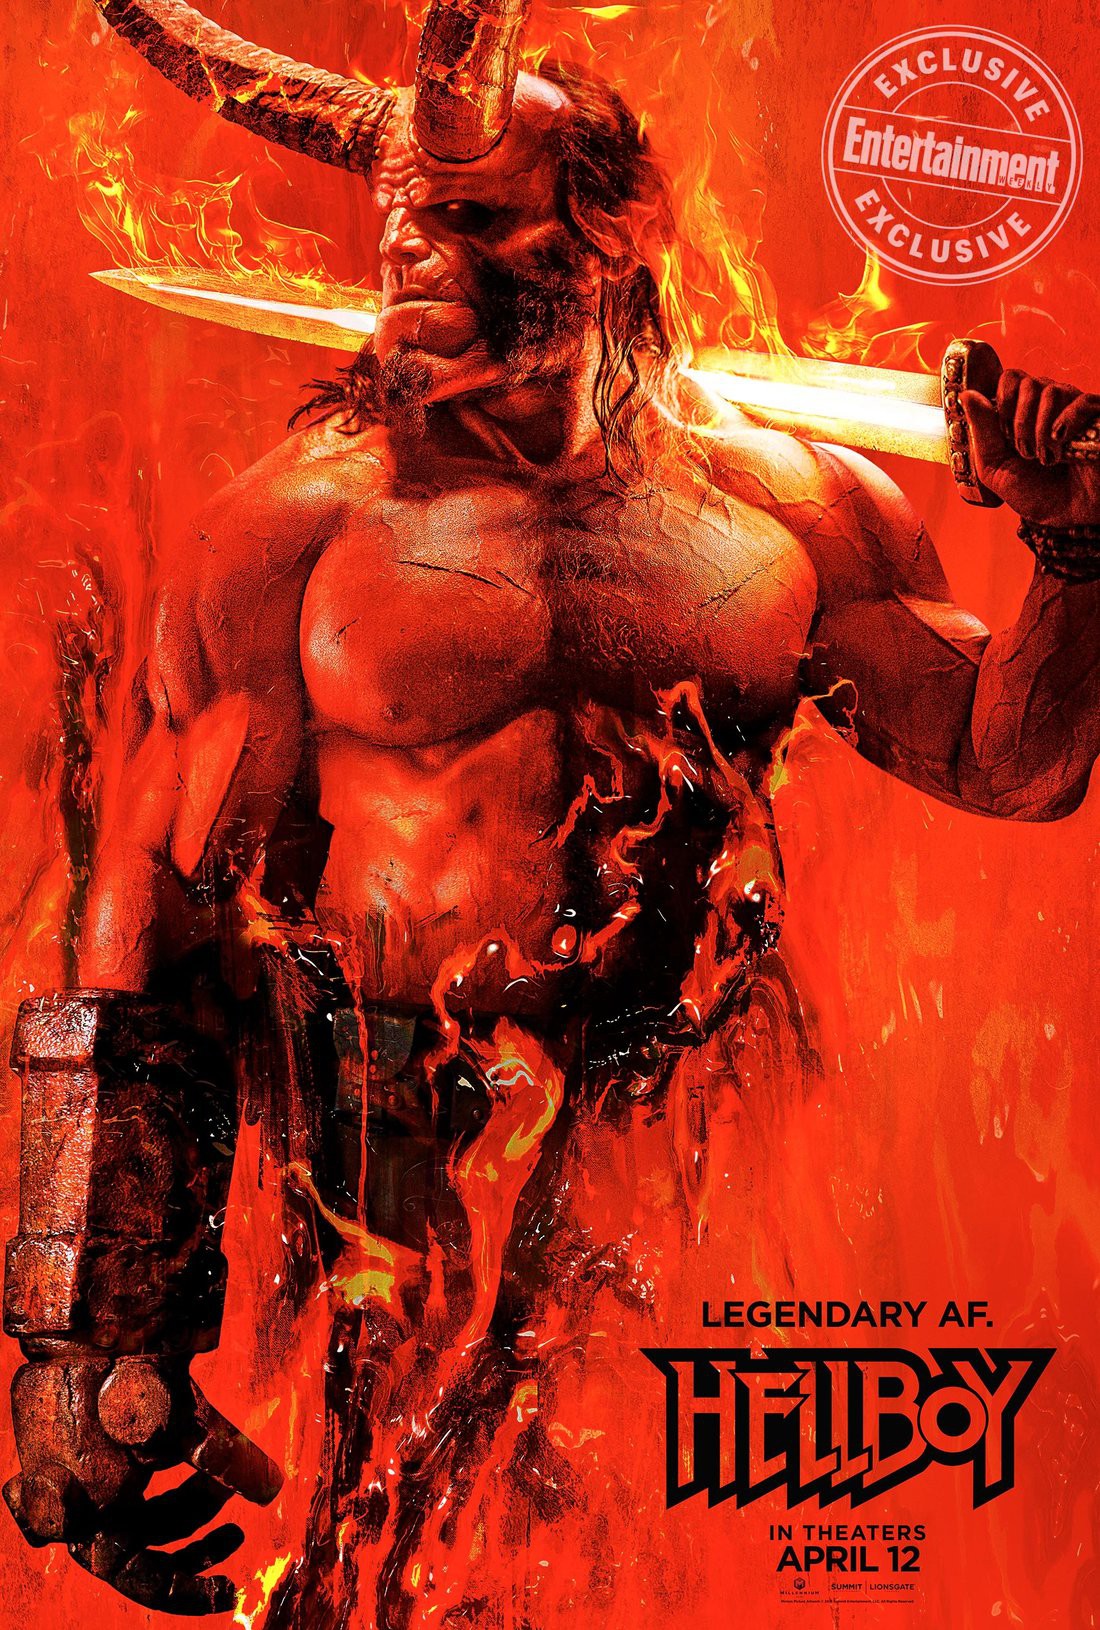 David Harbour xuất hiện đình đám trong poster phim Hellboy